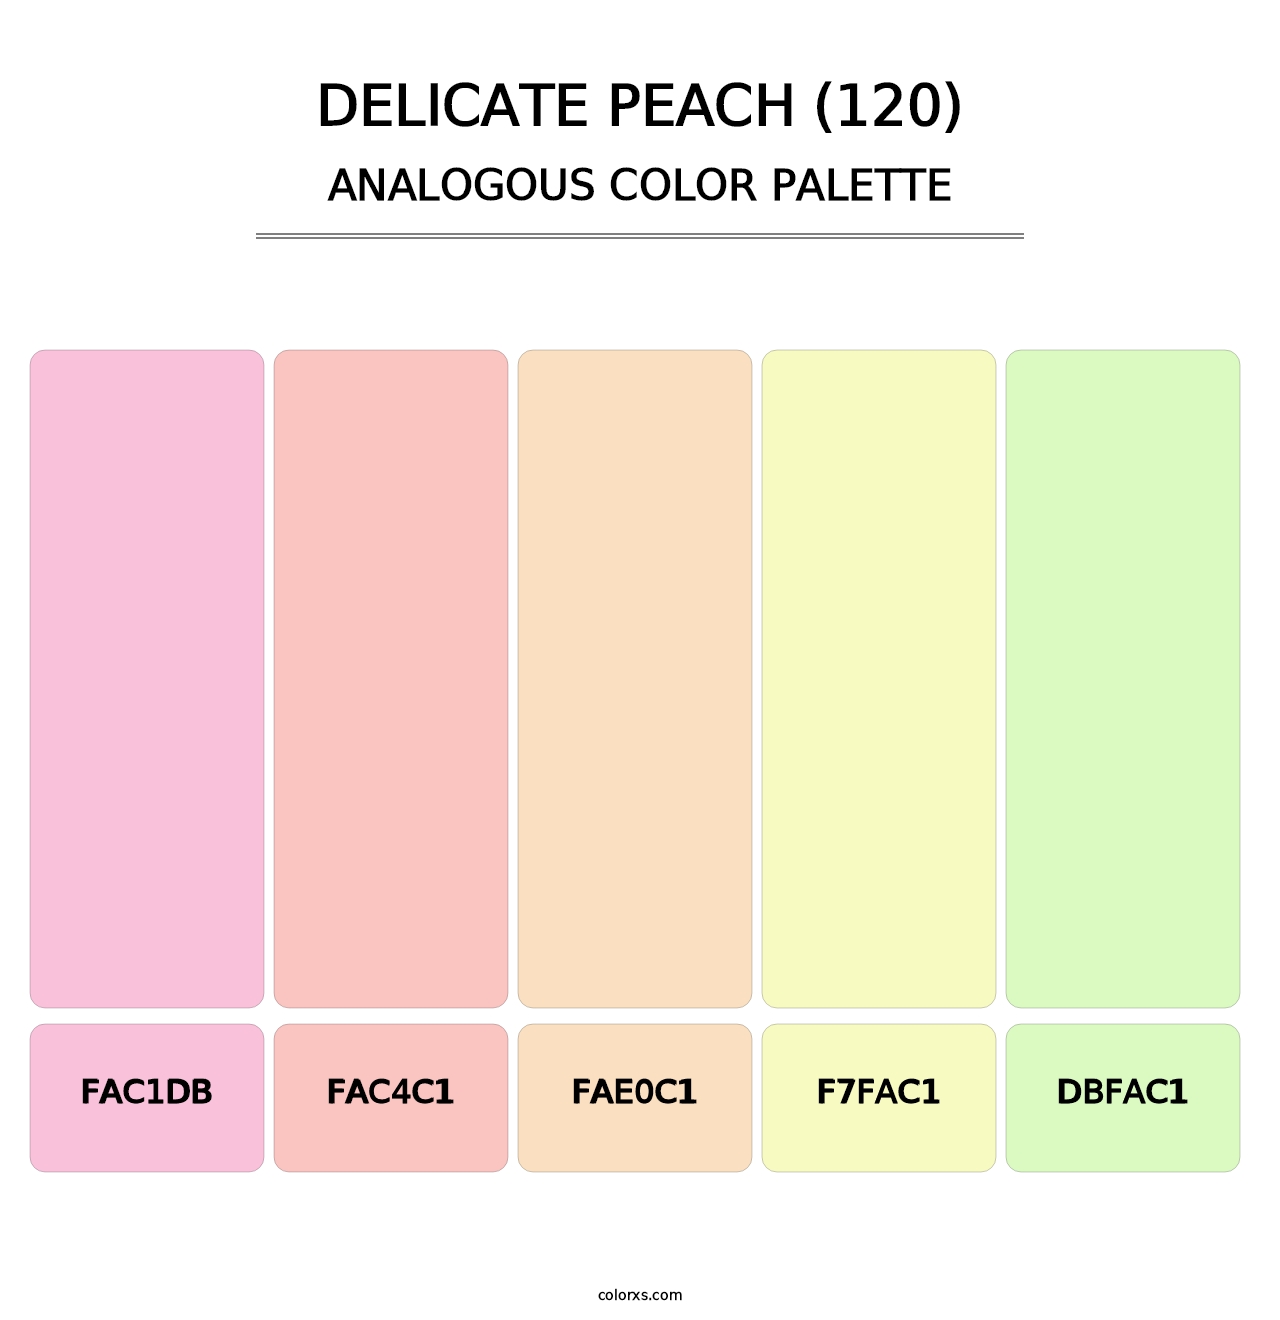 Delicate Peach (120) - Analogous Color Palette